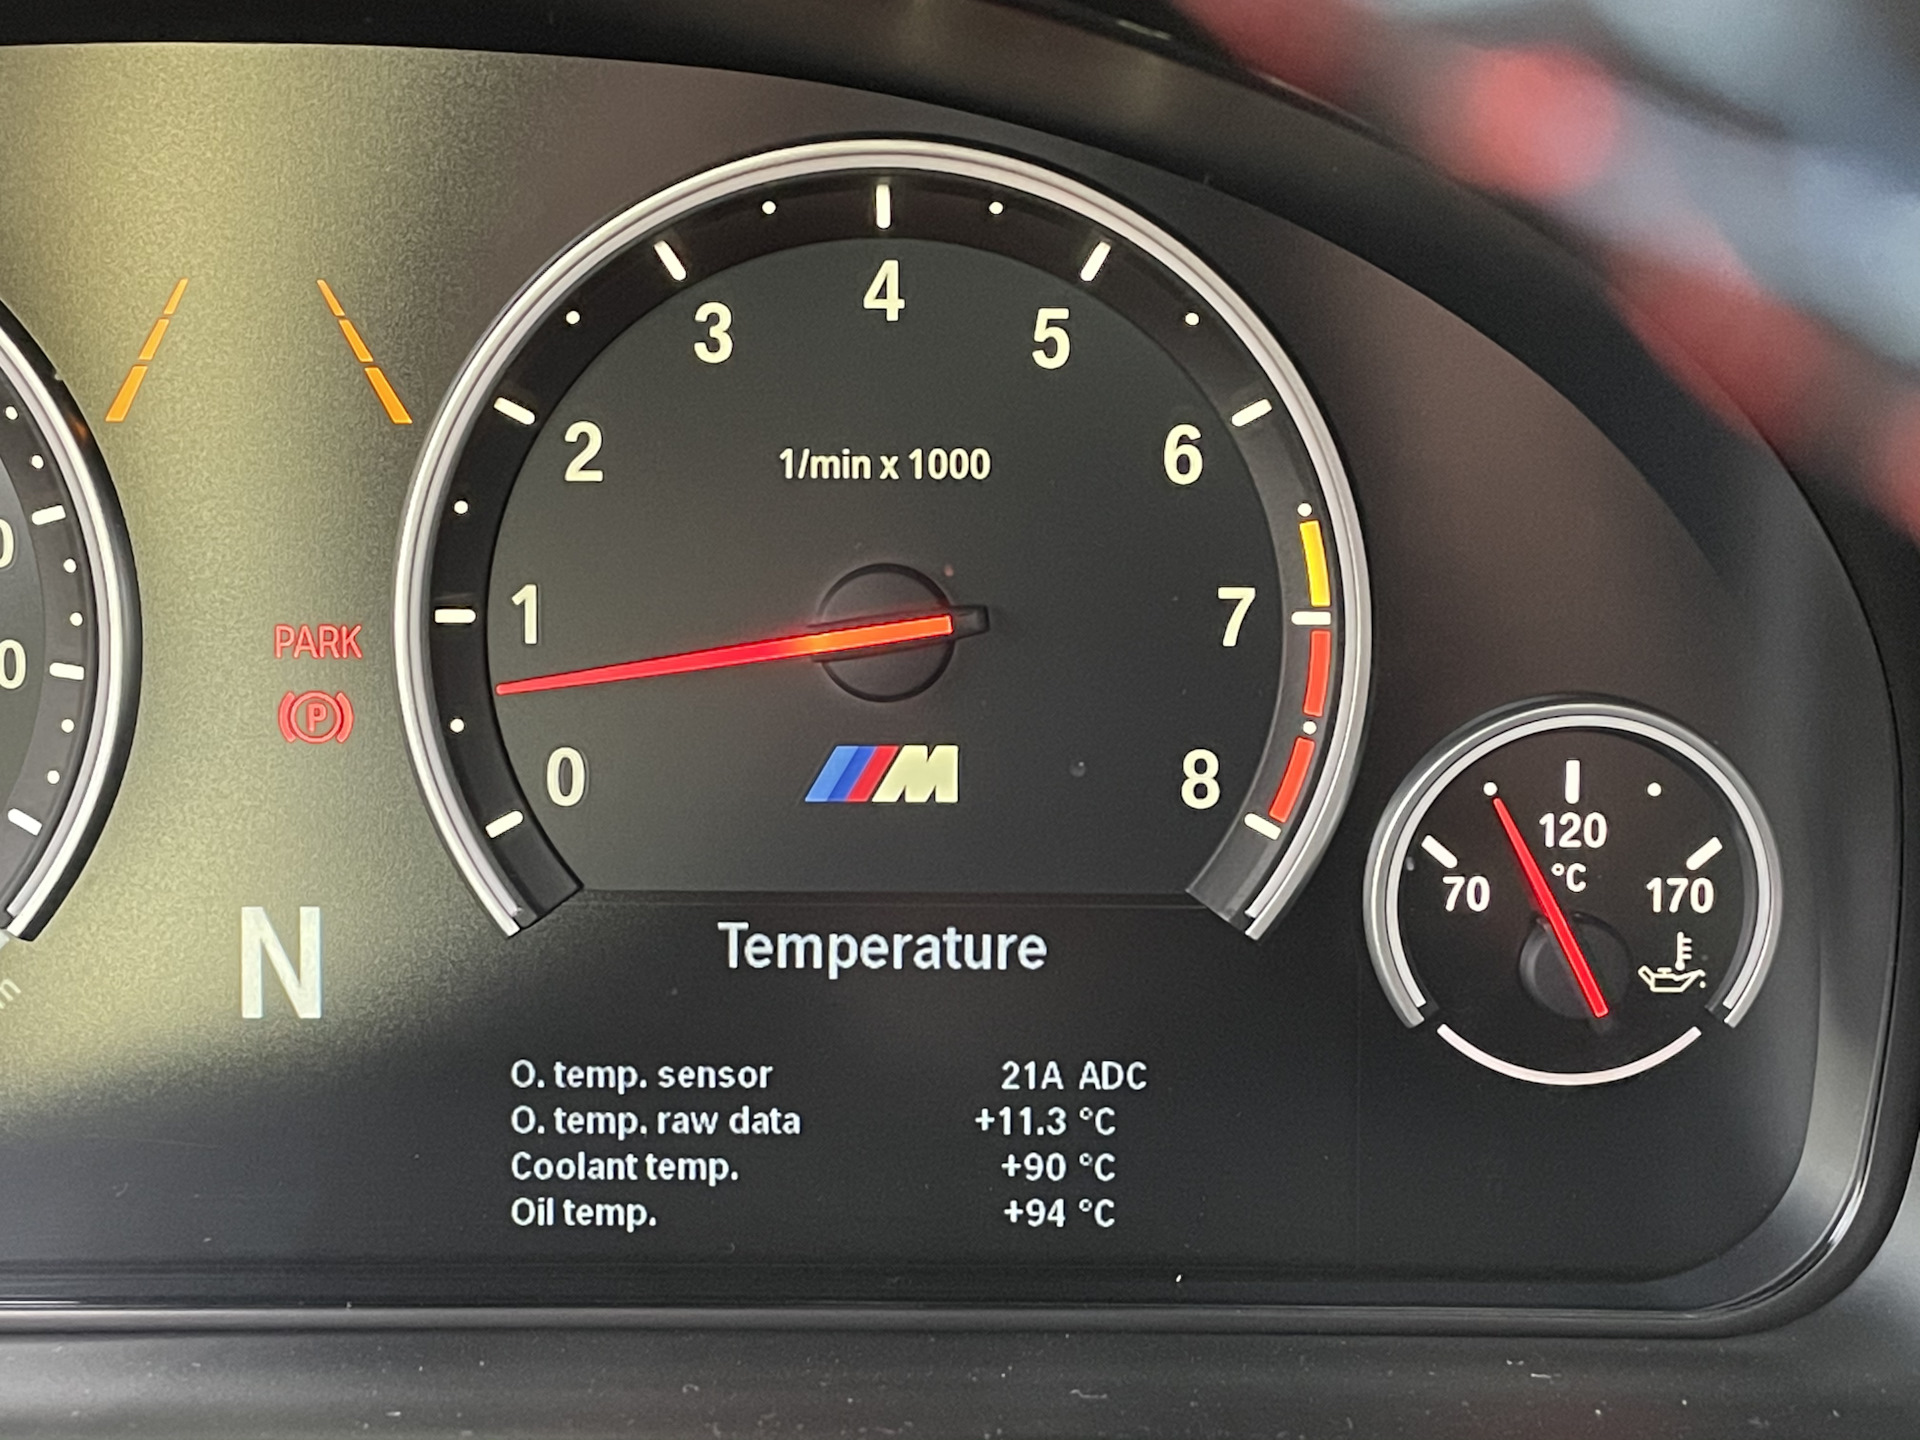 Температура масла бмв. Приборная панель ф30. БМВ x6 щиток приборов бензин 2011. BMW f10 температура масла. BMW m5 f10 приборная панель.